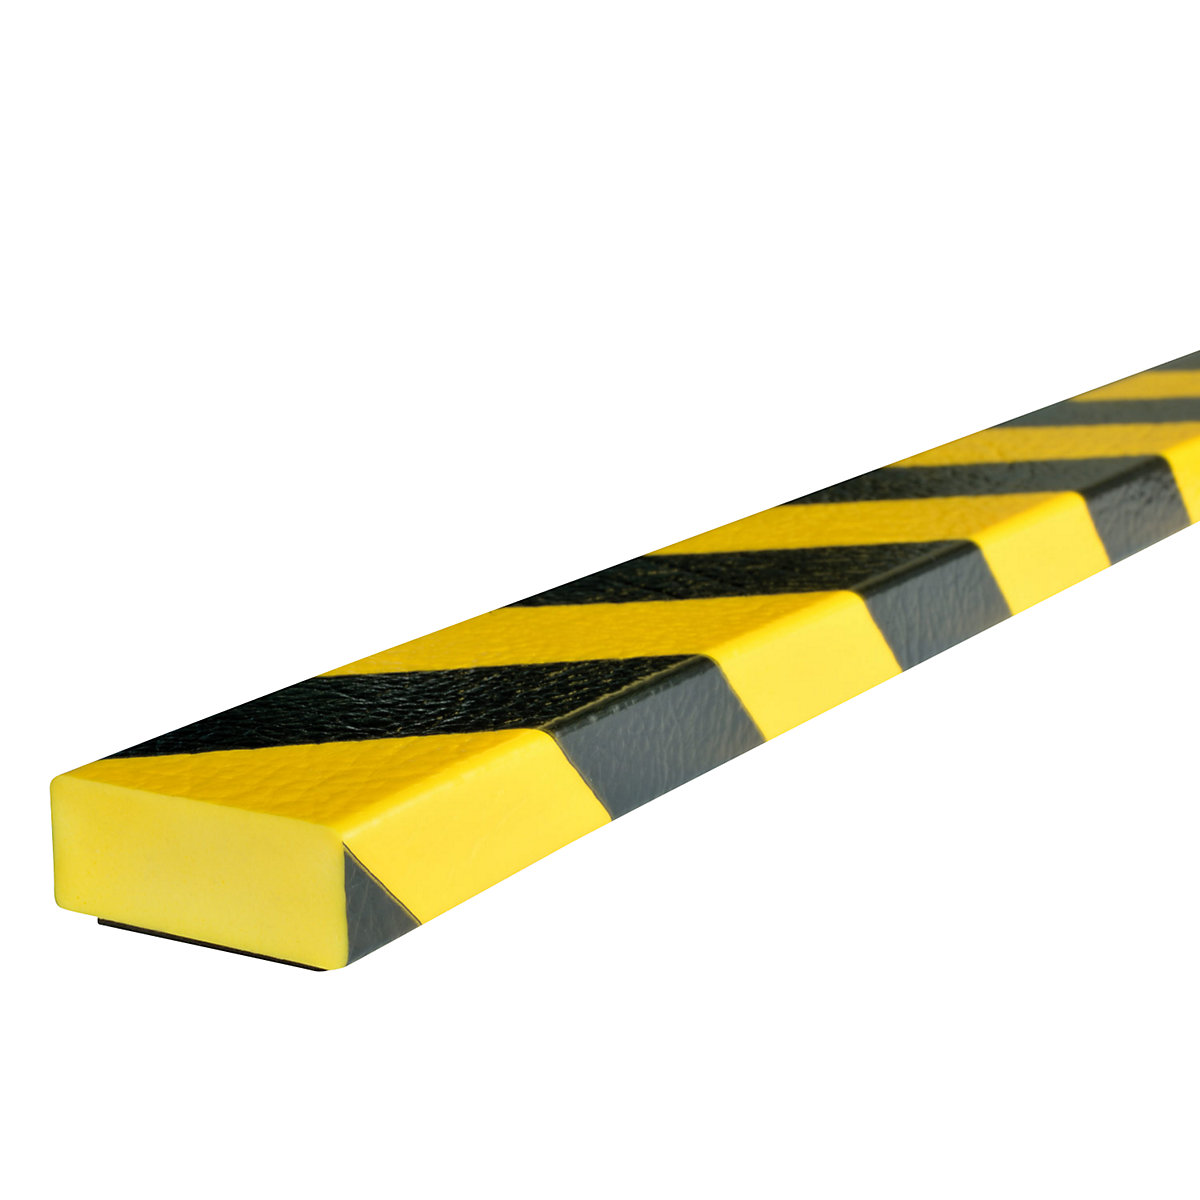 Proteção de superfícies Knuffi® – SHG, tipo D, unidade de 1 m, íman, amarelo/preto-20